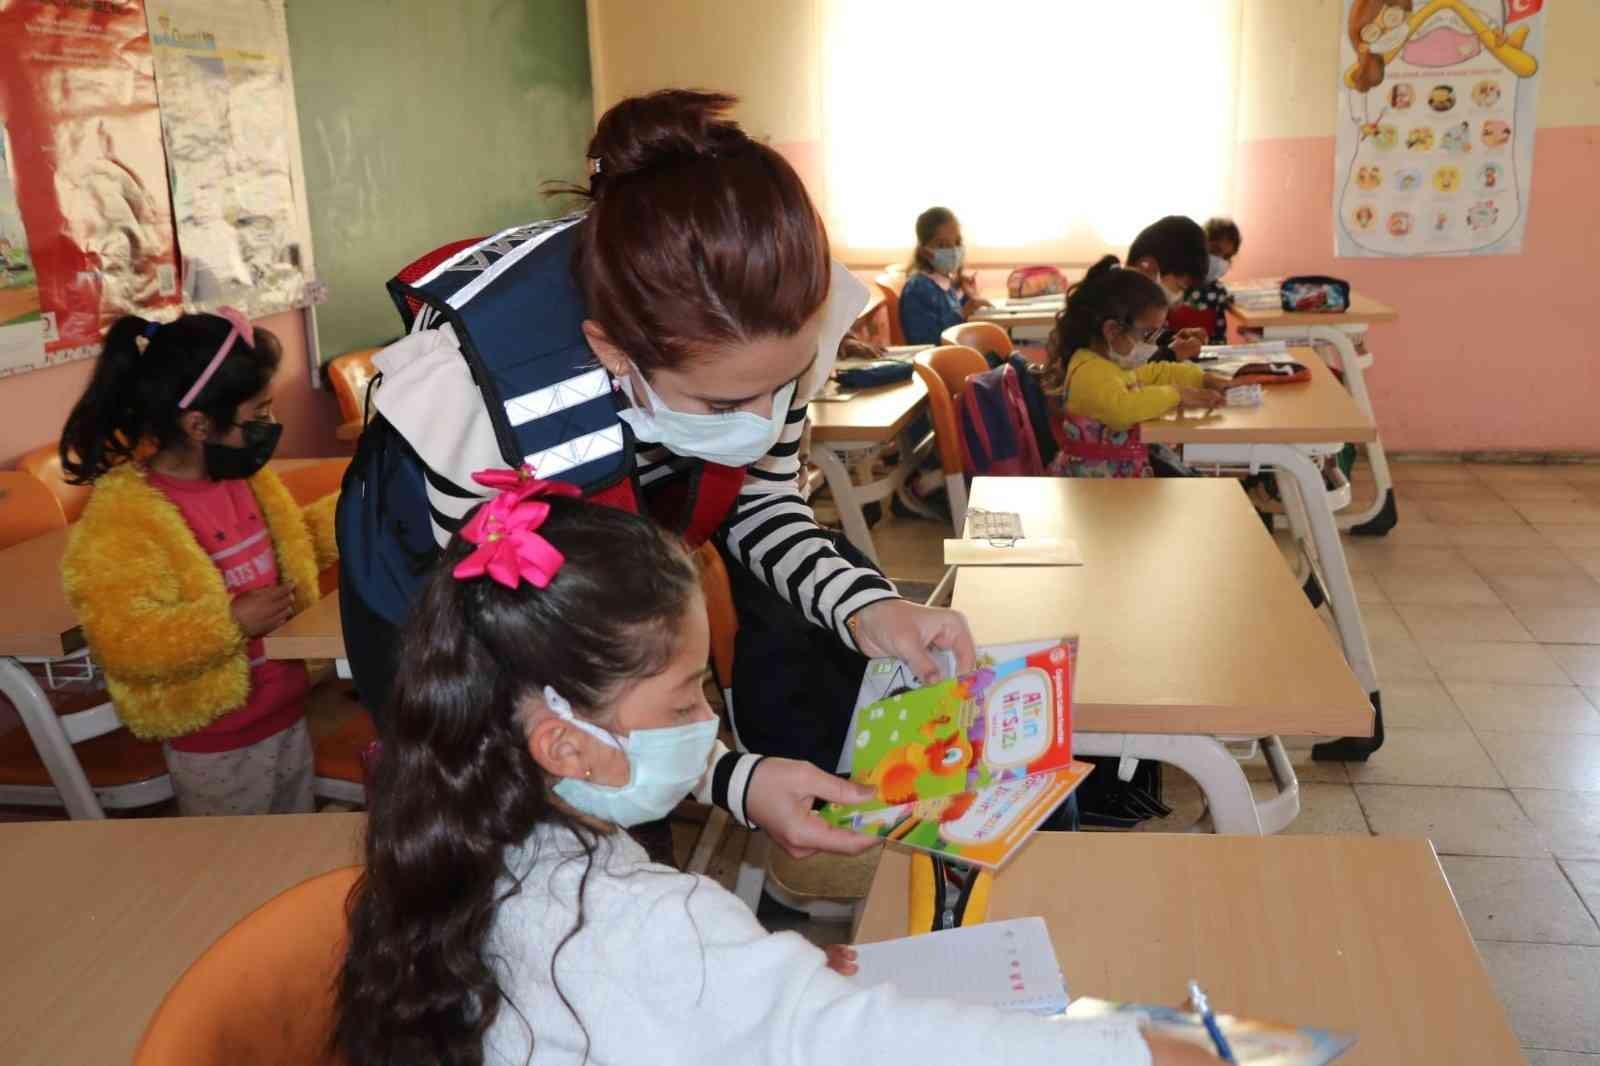 Ardahan’da Güvenli Okul, Güvenli Gelecek Projesi kapsamında jandarma ekipleri denetim yaptı #ardahan